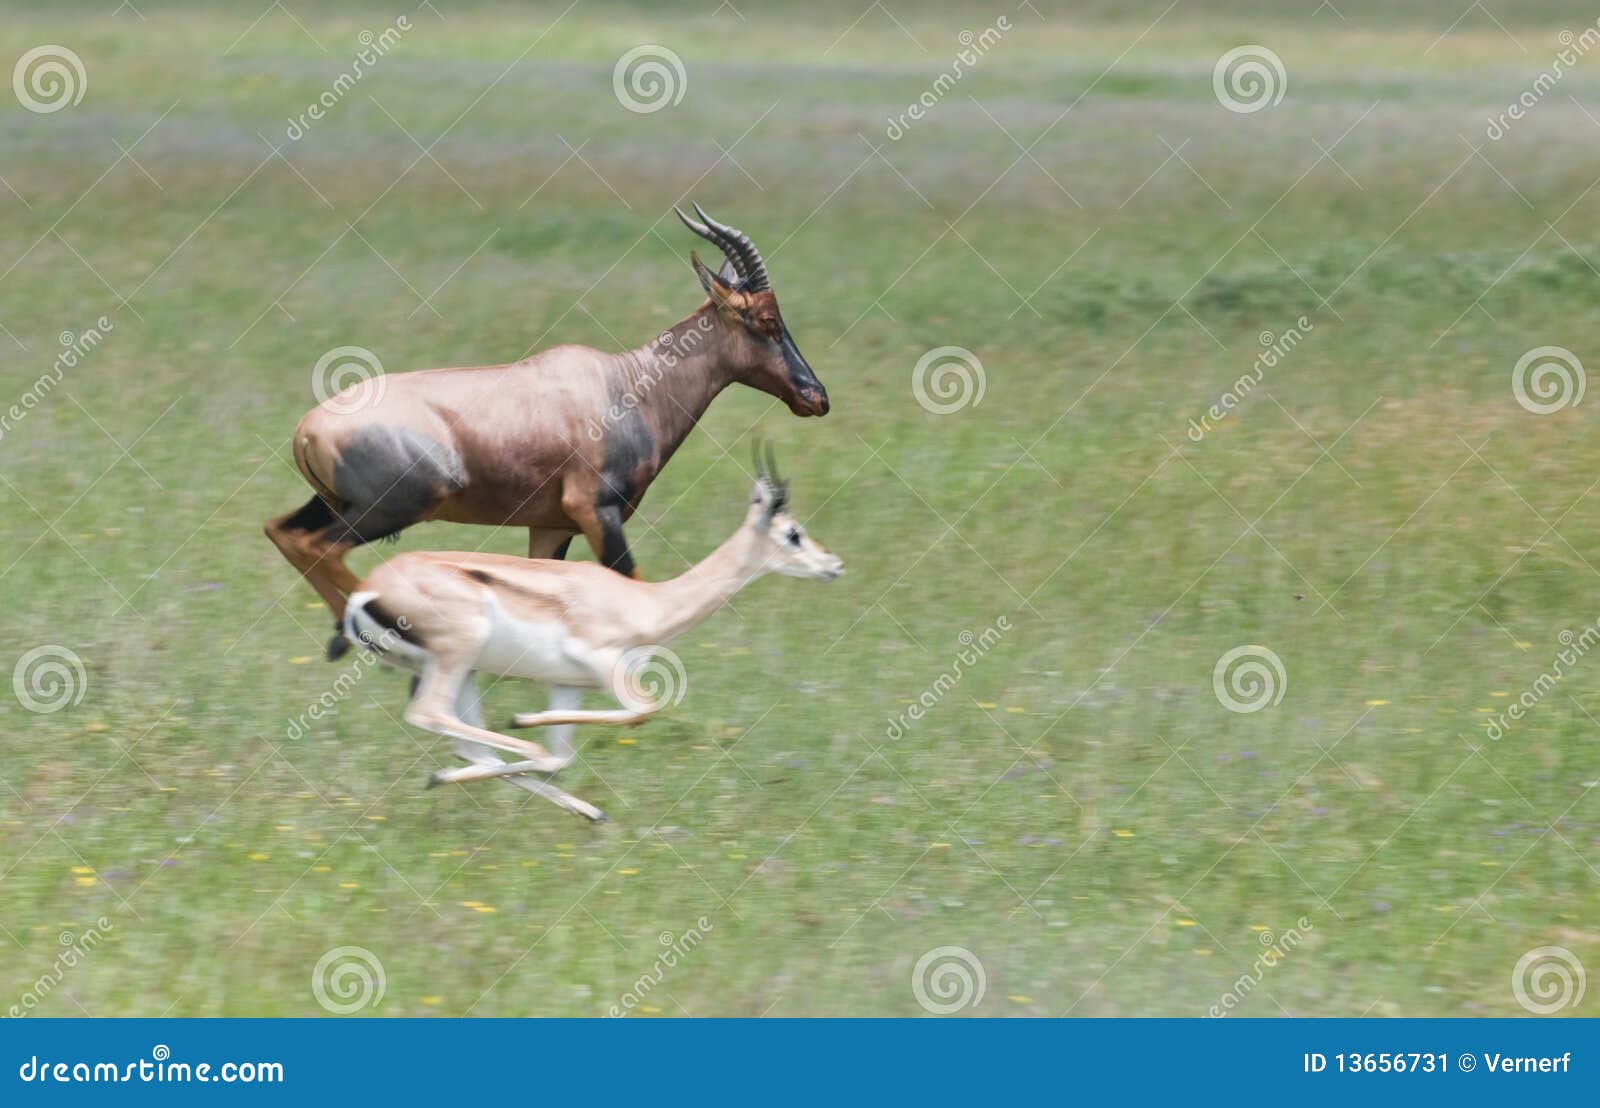 topi vs grant's gazelle